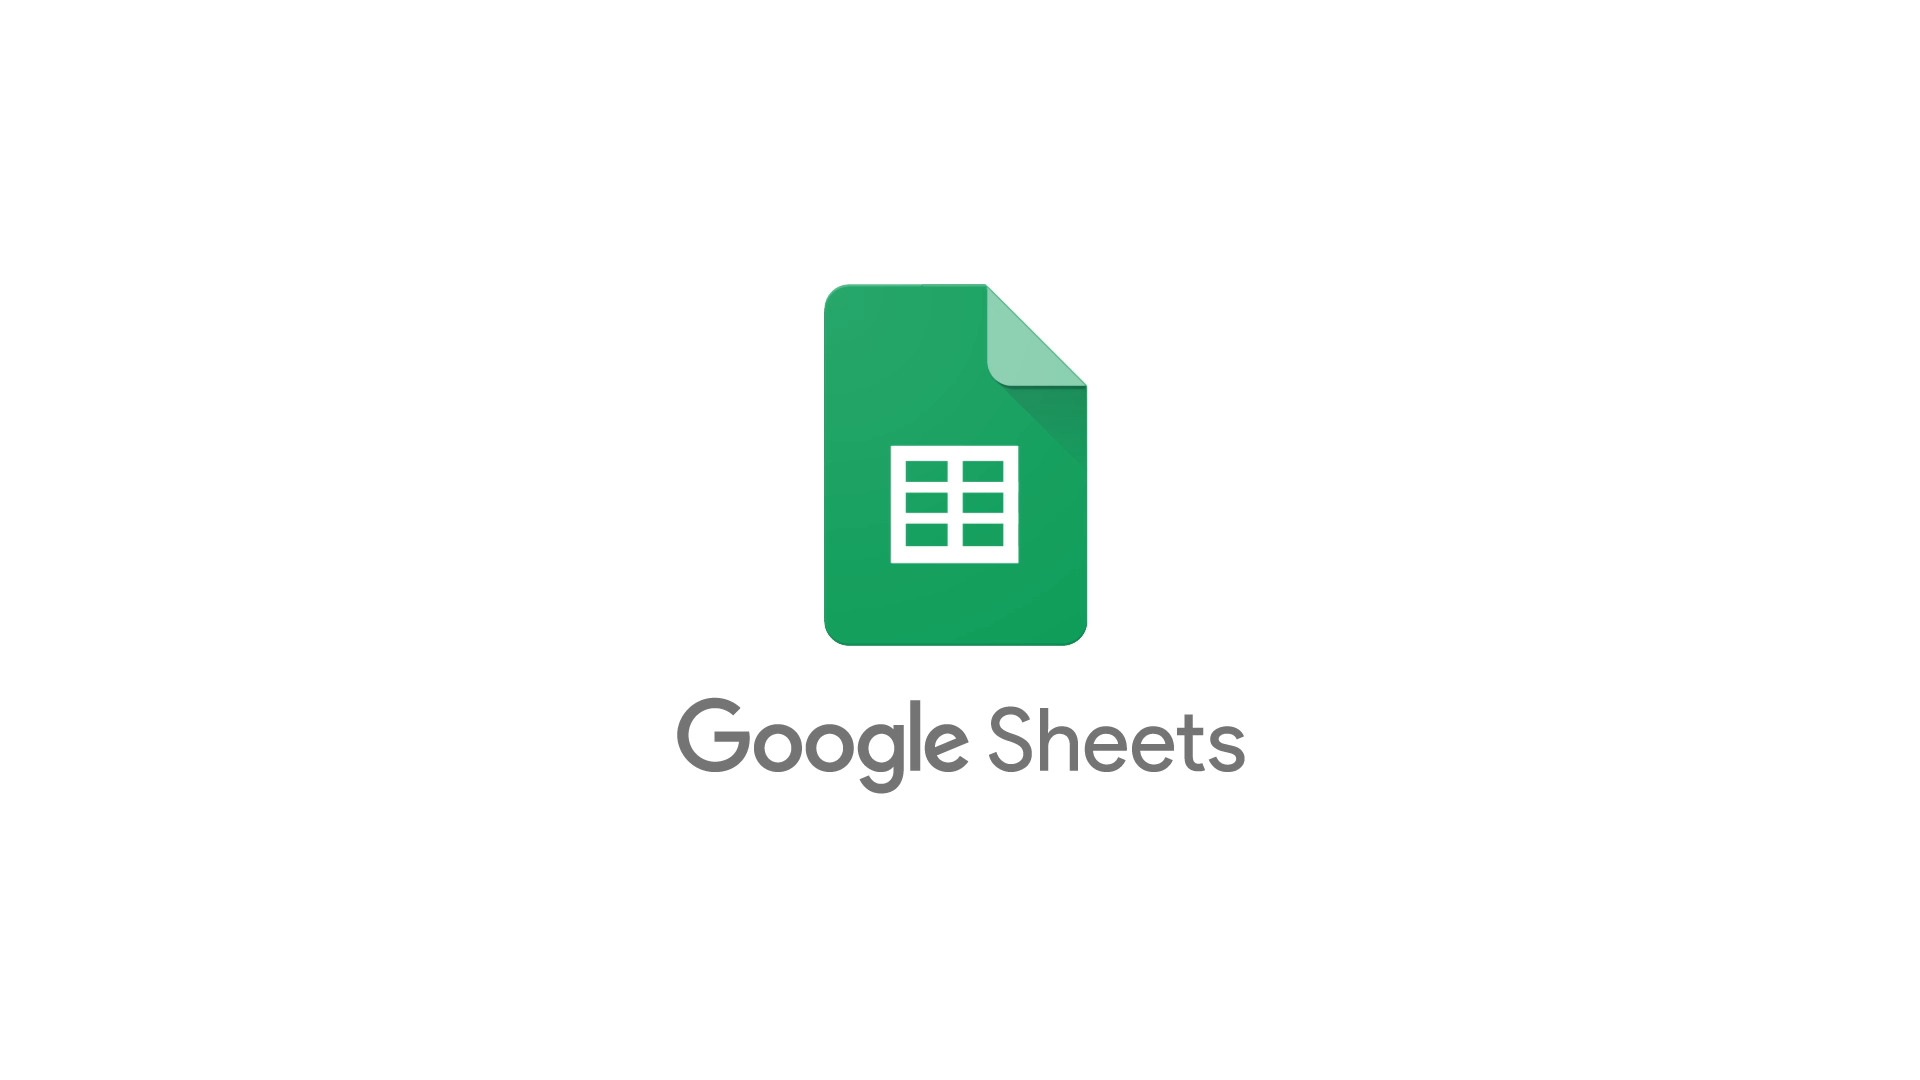 Google Sheets va bientôt proposer des formules à mesure que vous saisissez des données